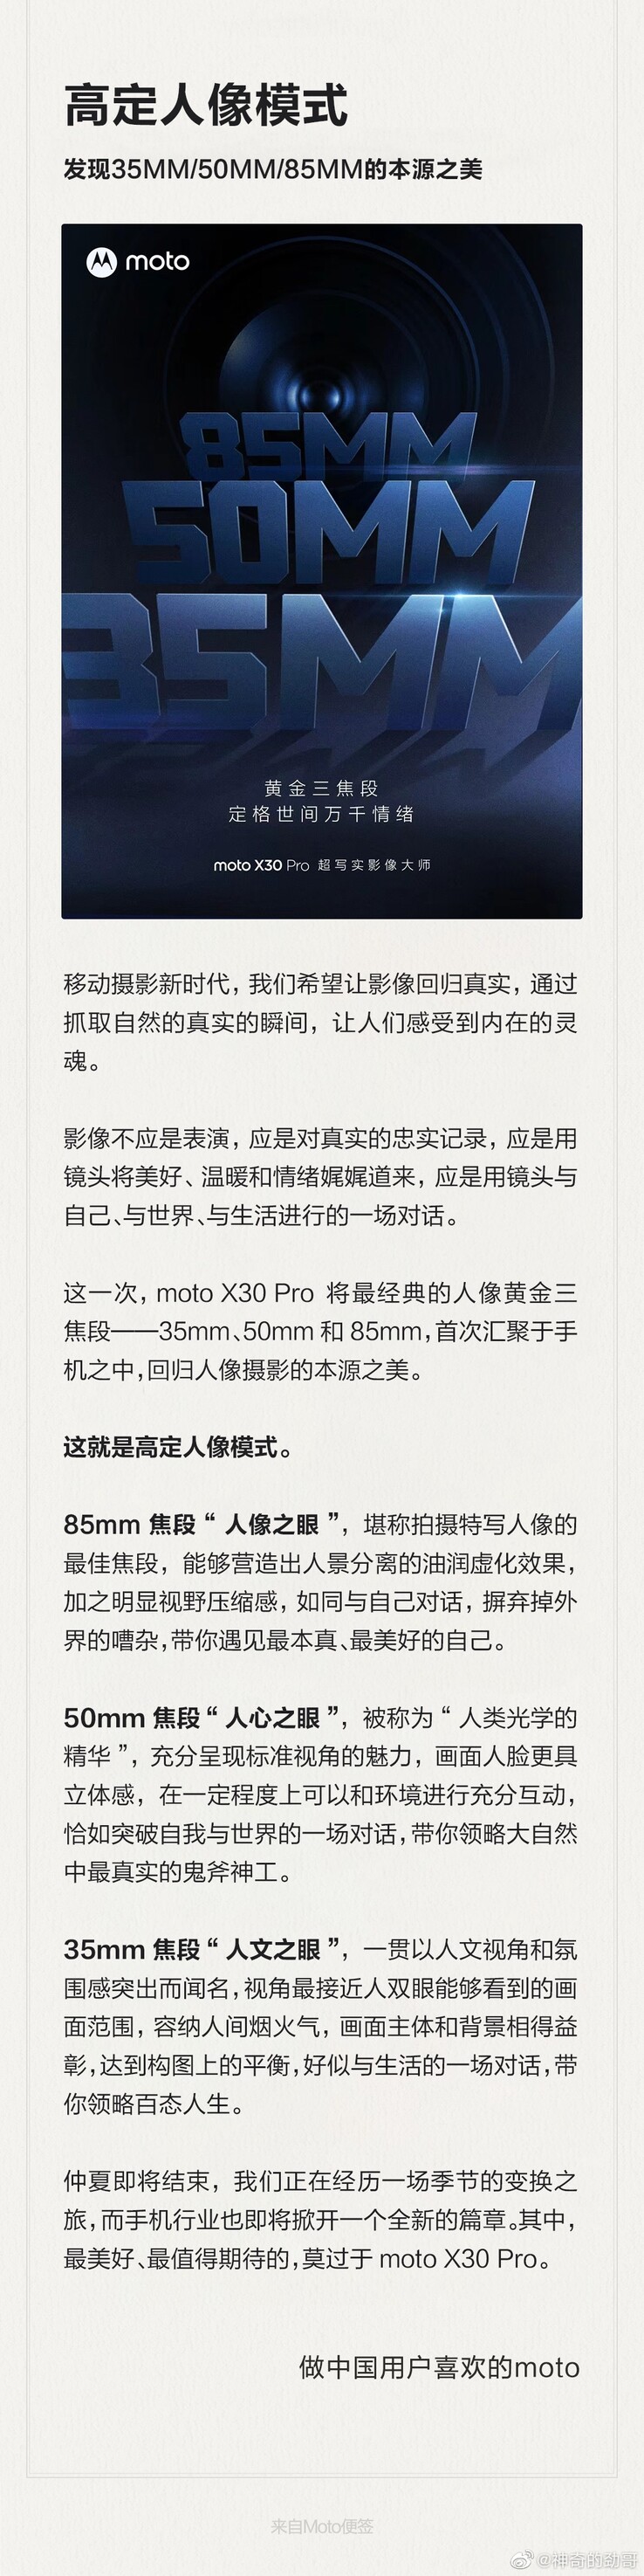 Il teaser completo del Moto X30 Pro di Motorola. (Fonte: Motorola via Weibo)